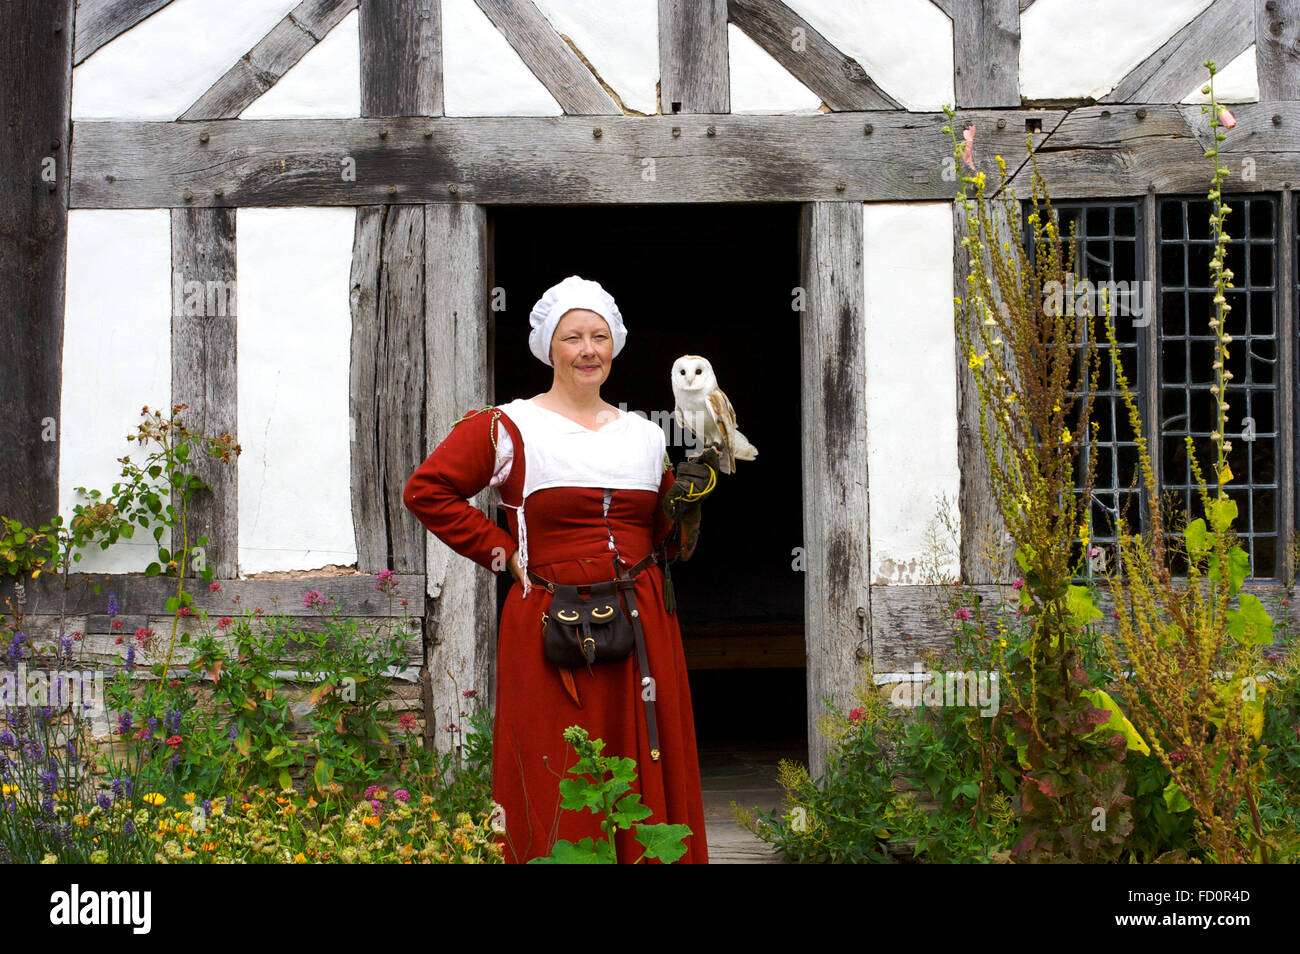 Signora che tiene millie il fienile è in mostra presso la Mary Arden’s Farm di Stratford-upon-Avon. Foto Stock